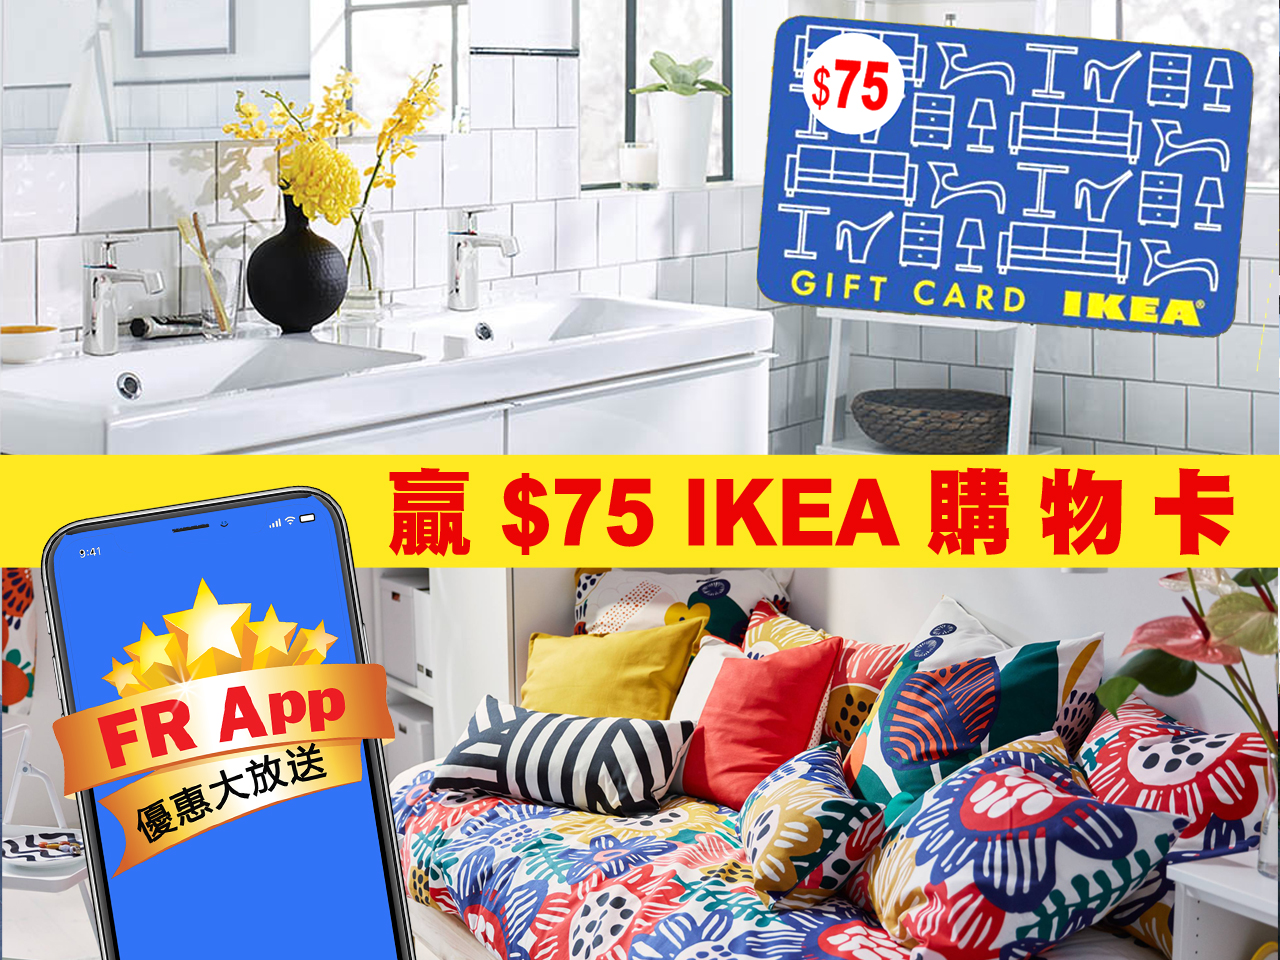 FR App 優惠大放送 贏 $75 IKEA 購物卡 [得獎名單公佈]